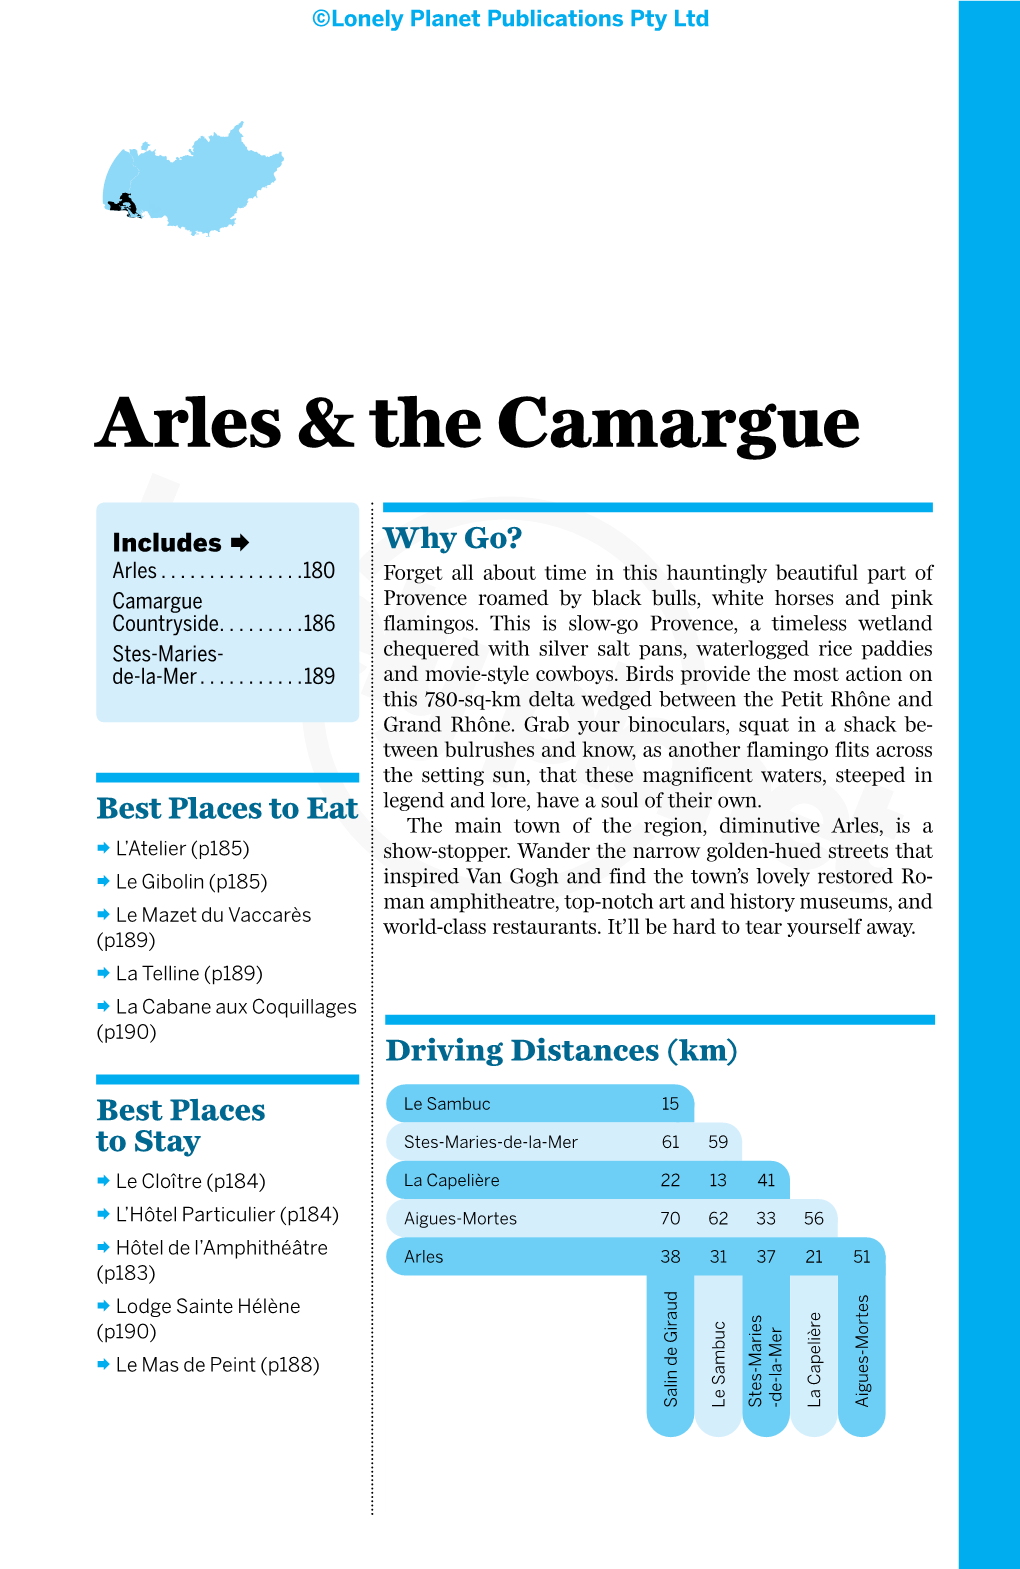 Arles & the Camargue